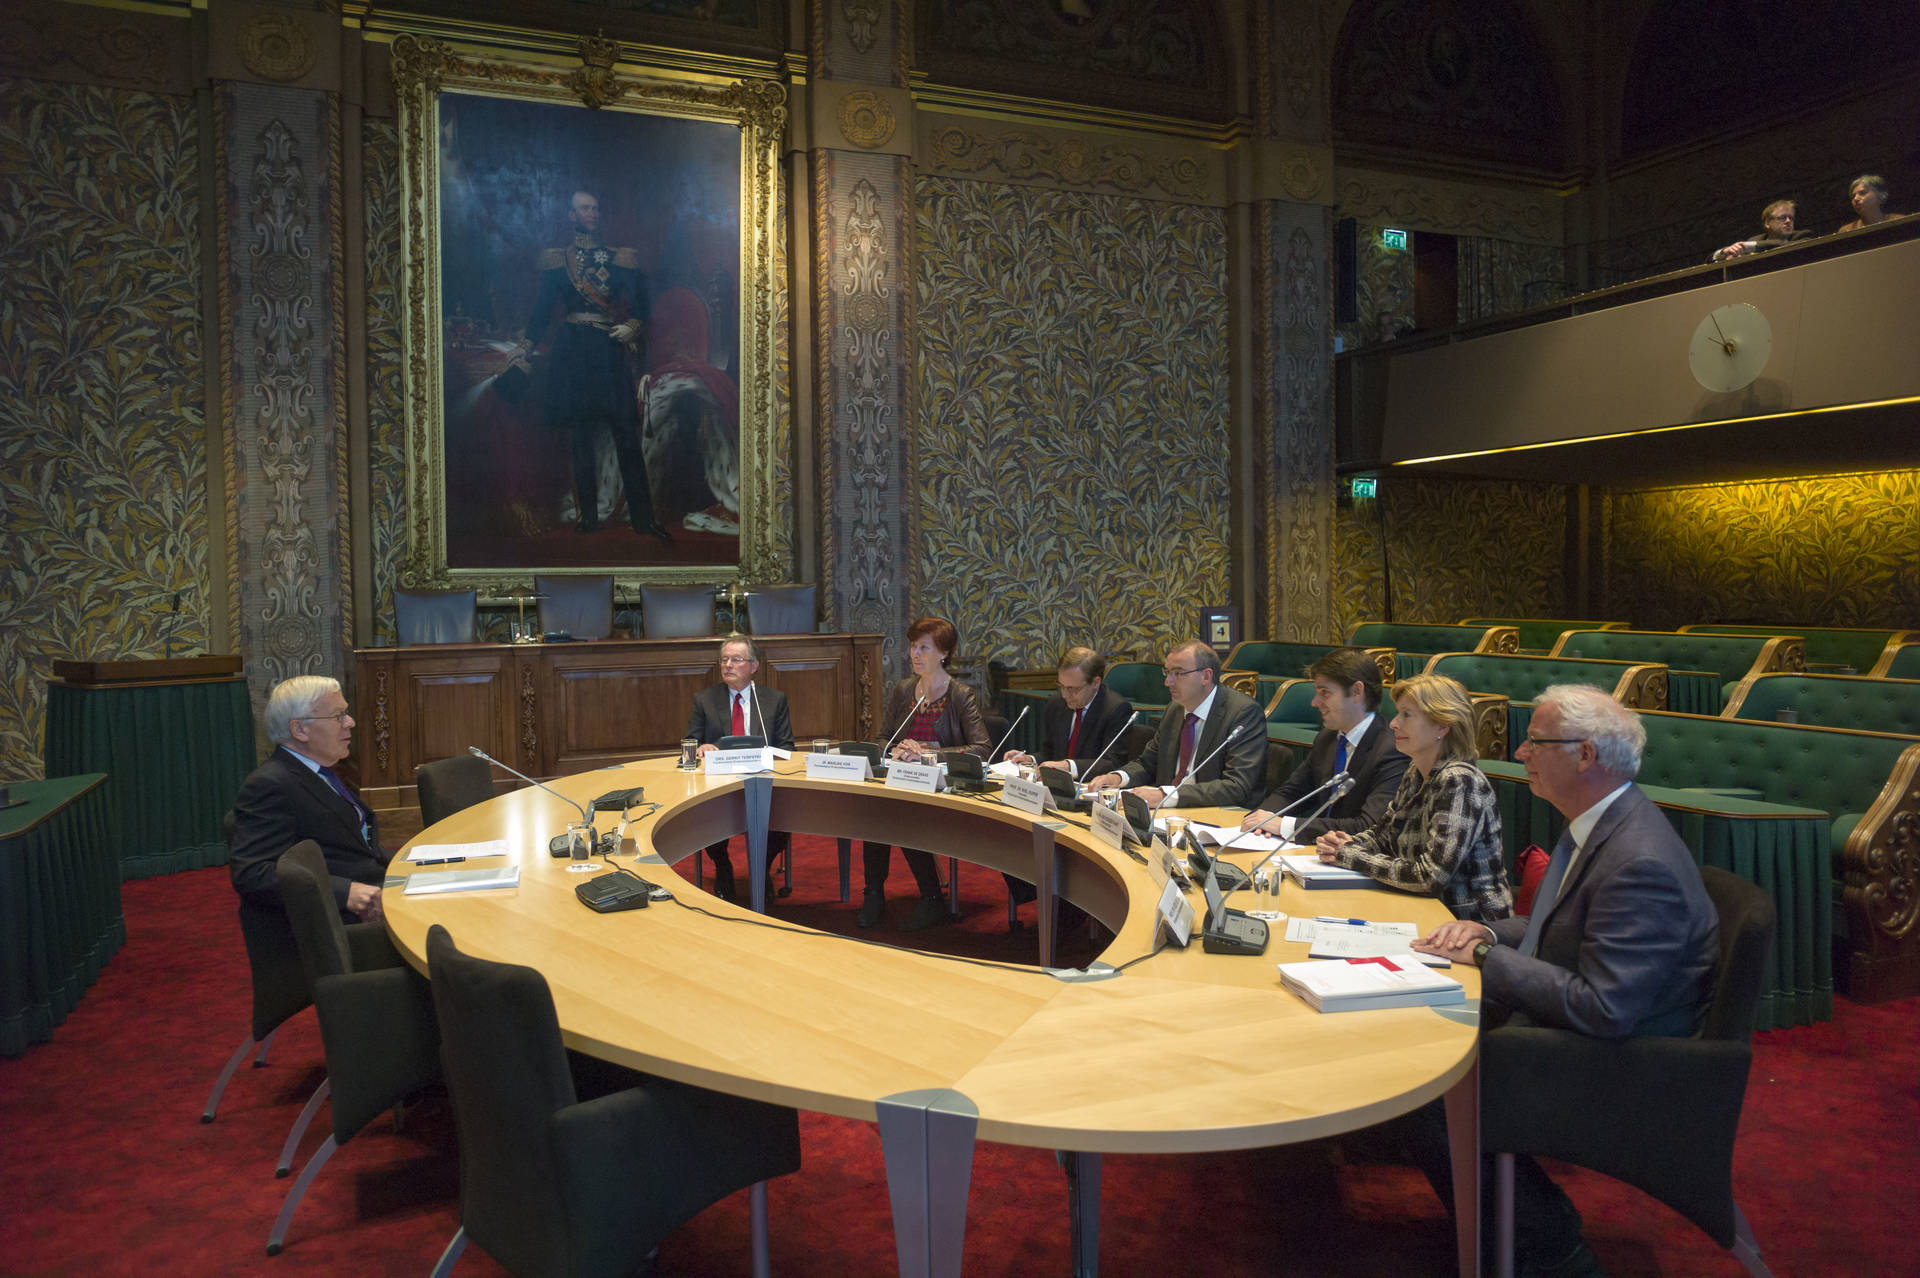 Parlementaire Onderzoekscommissie in plenaire zaal Eerste Kamer